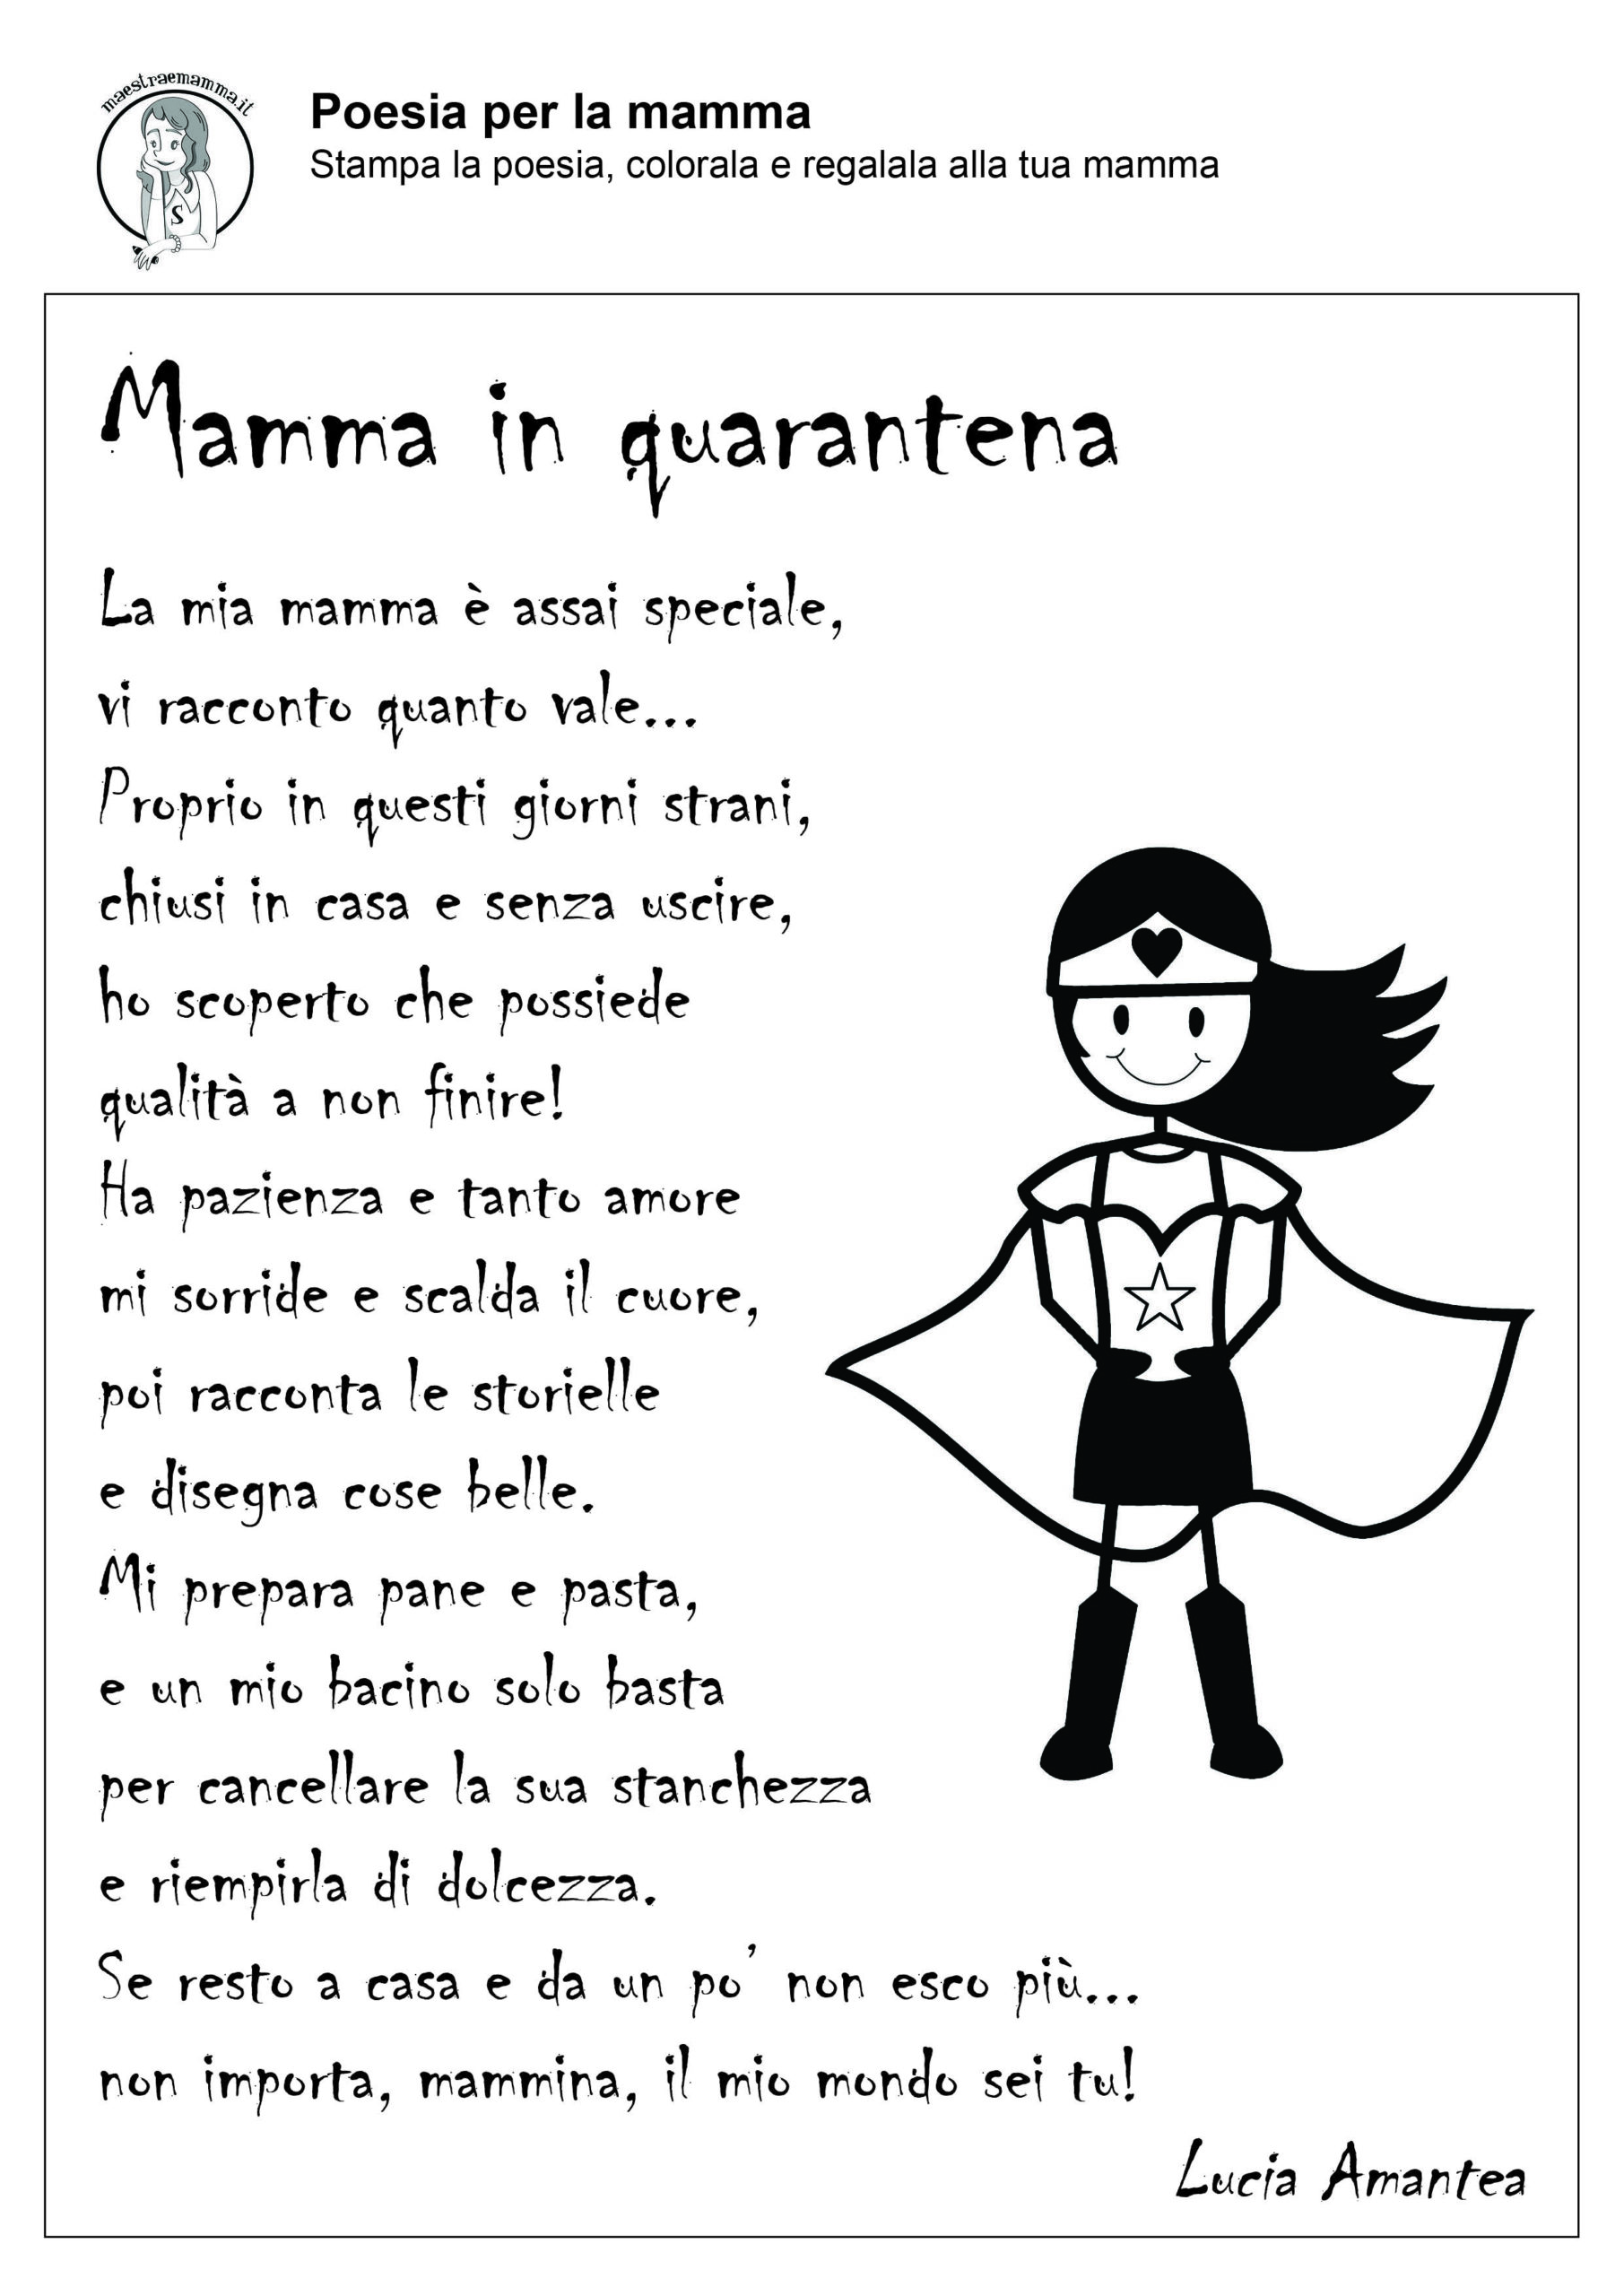 Filastrocca per la mamma7-Poesia per la festa della mamma in quarantena-in-bianco-e-nero